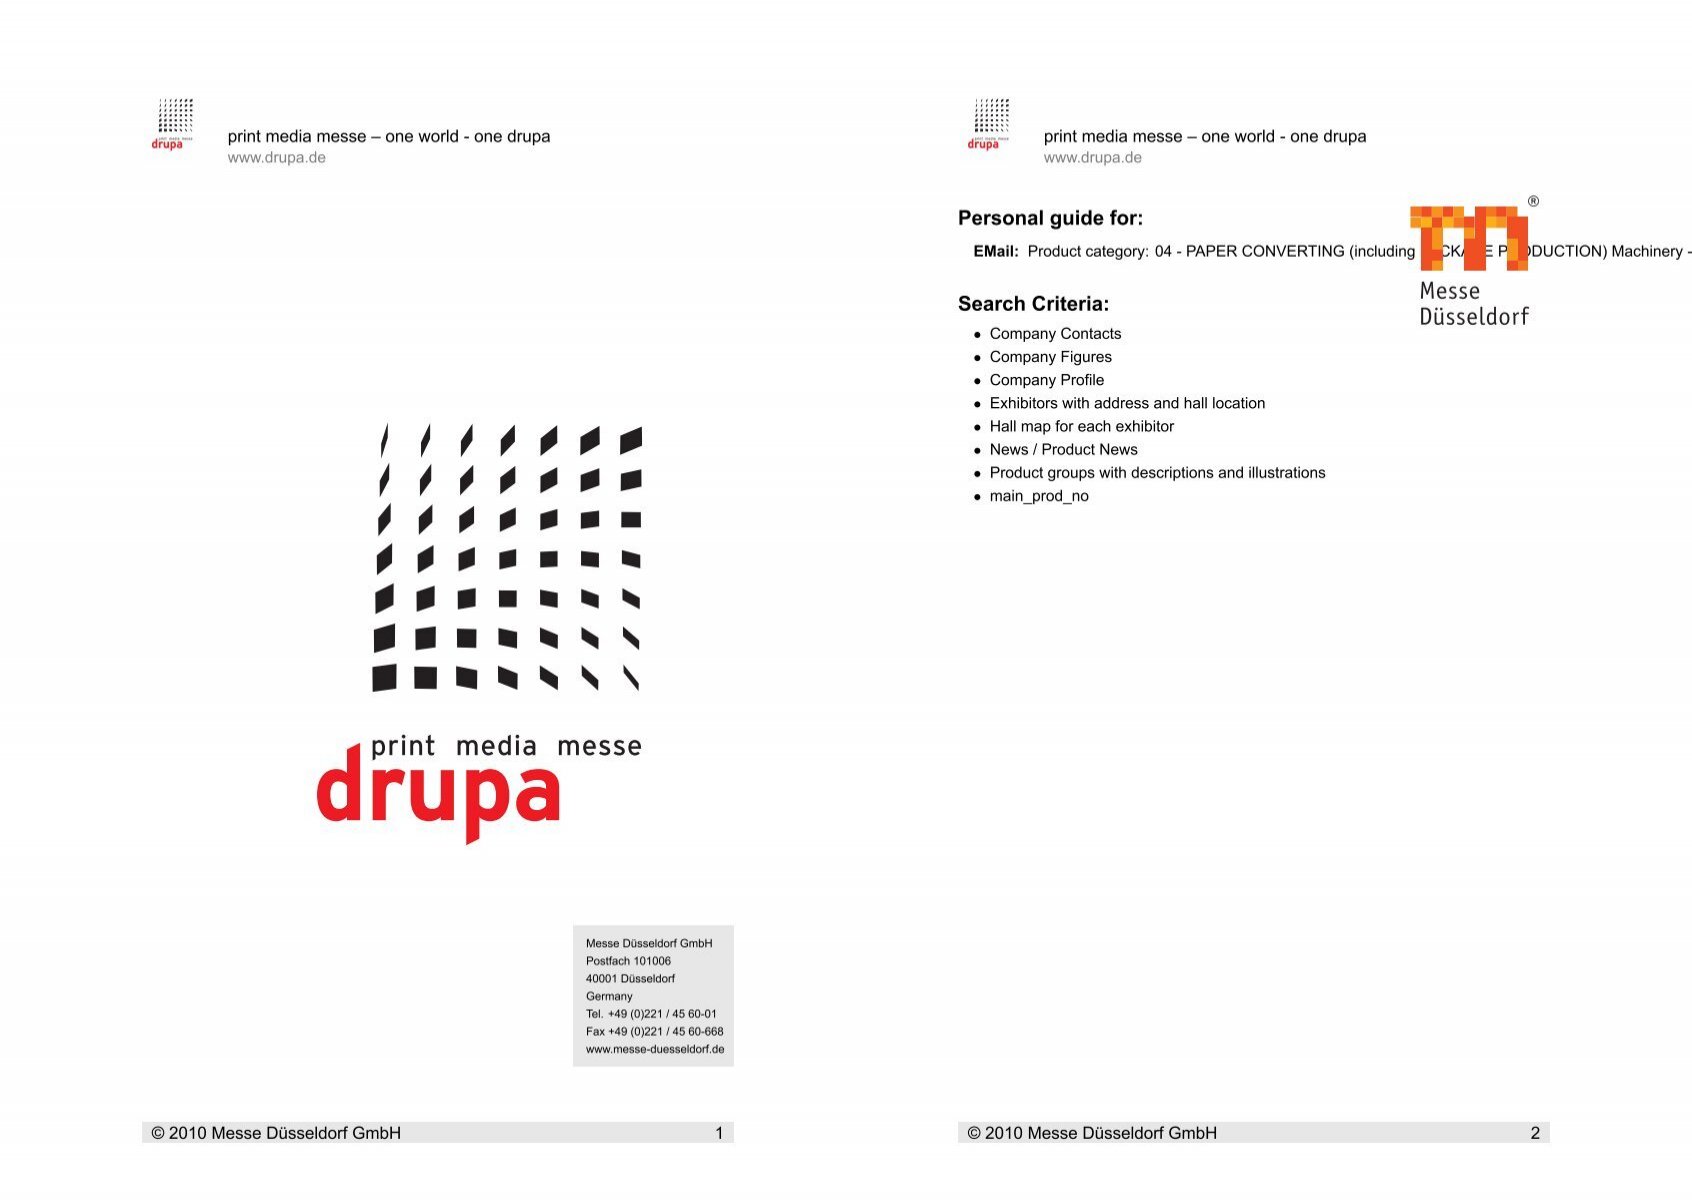 Personal guide for: Criteria: - Search Drupa